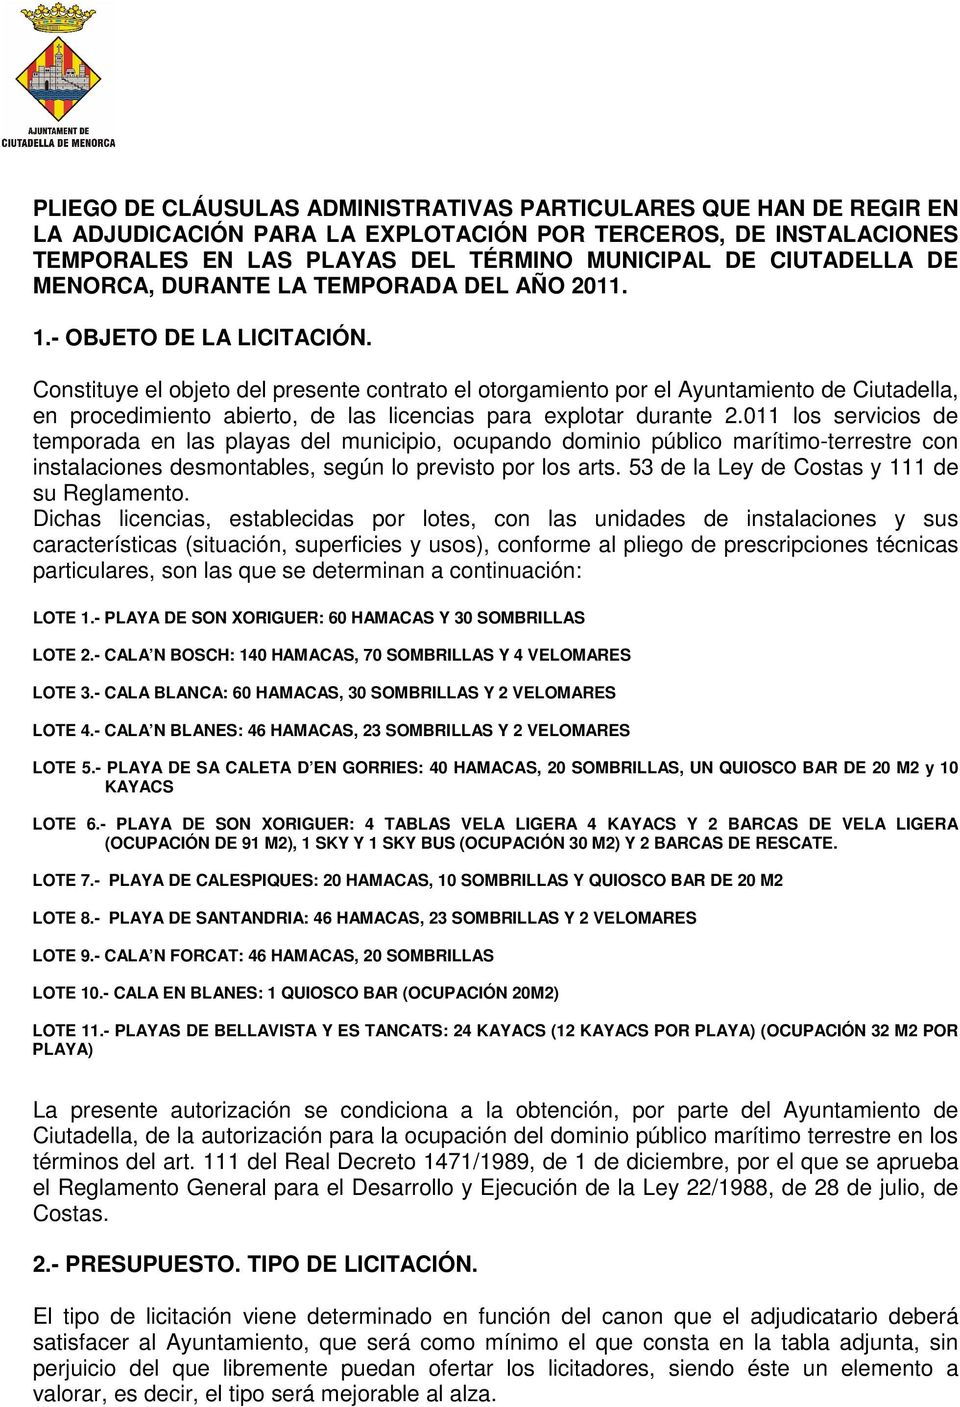 Constituye el objeto del presente contrato el otorgamiento por el Ayuntamiento de Ciutadella, en procedimiento abierto, de las licencias para explotar durante 2.